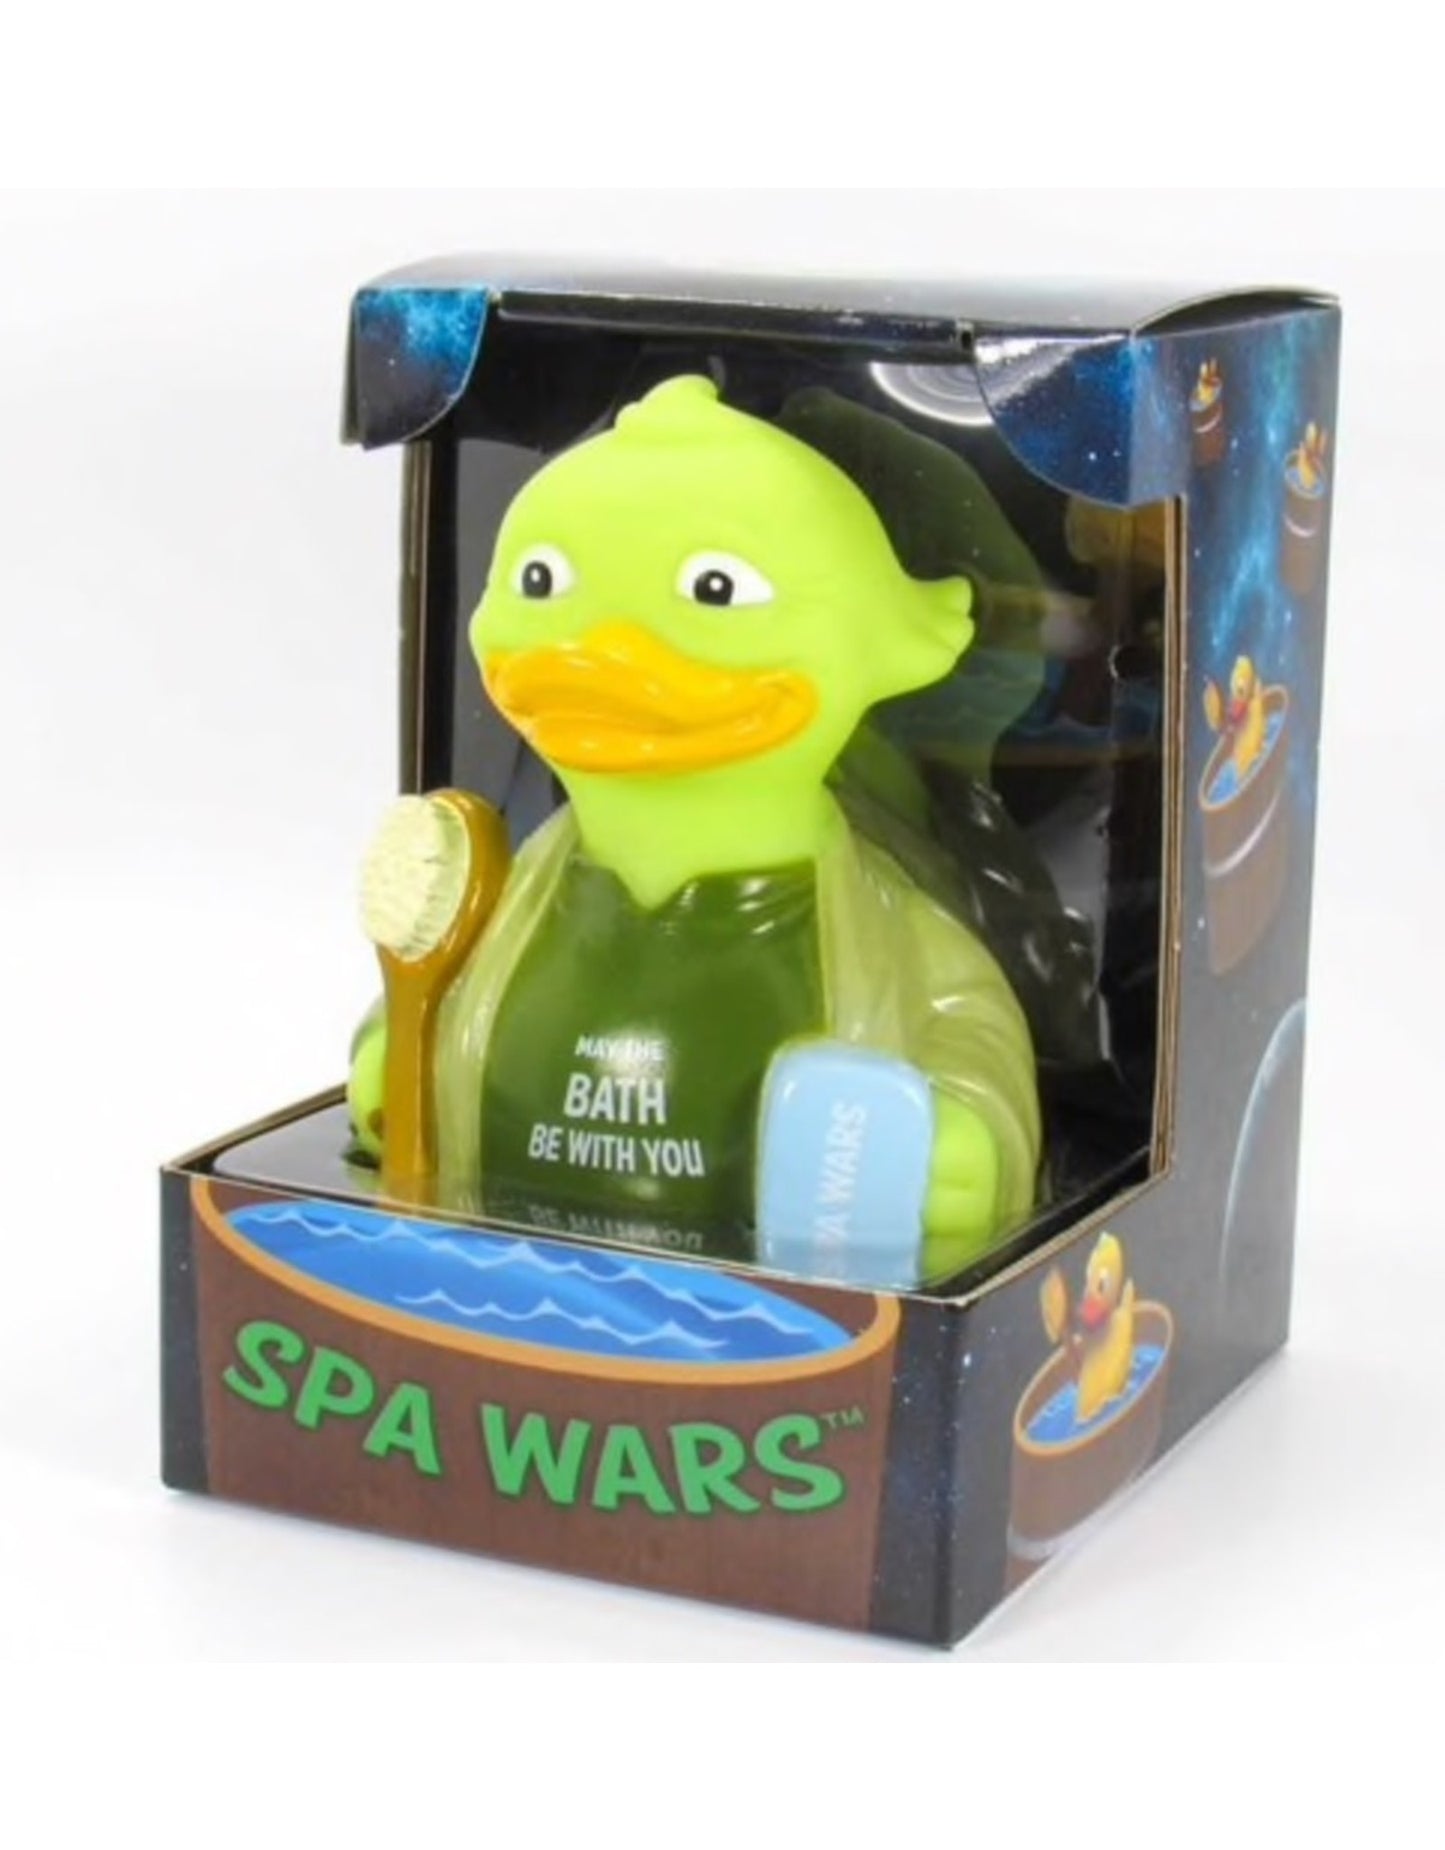 Yoda "Spa Wars" Rubber Duck